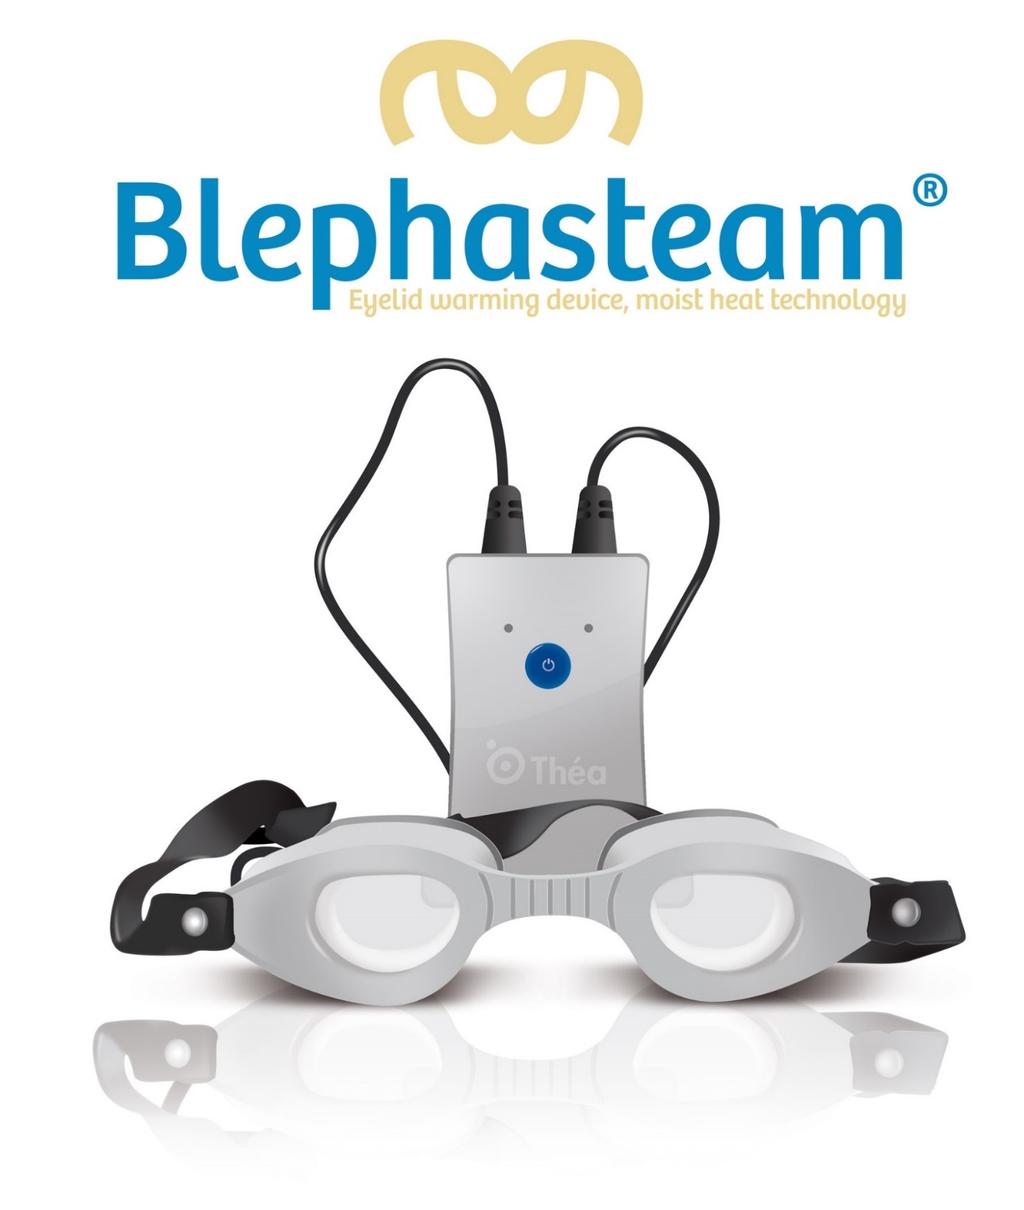 Blephasteam on patentoitu lääkinnällinen laite, joka saa aikaan olosuhteet, jotka luonnollisella tavalla parantavat kyynelnesteen laatua ja edistävät siten silmien terveyttä, näkökykyä ja